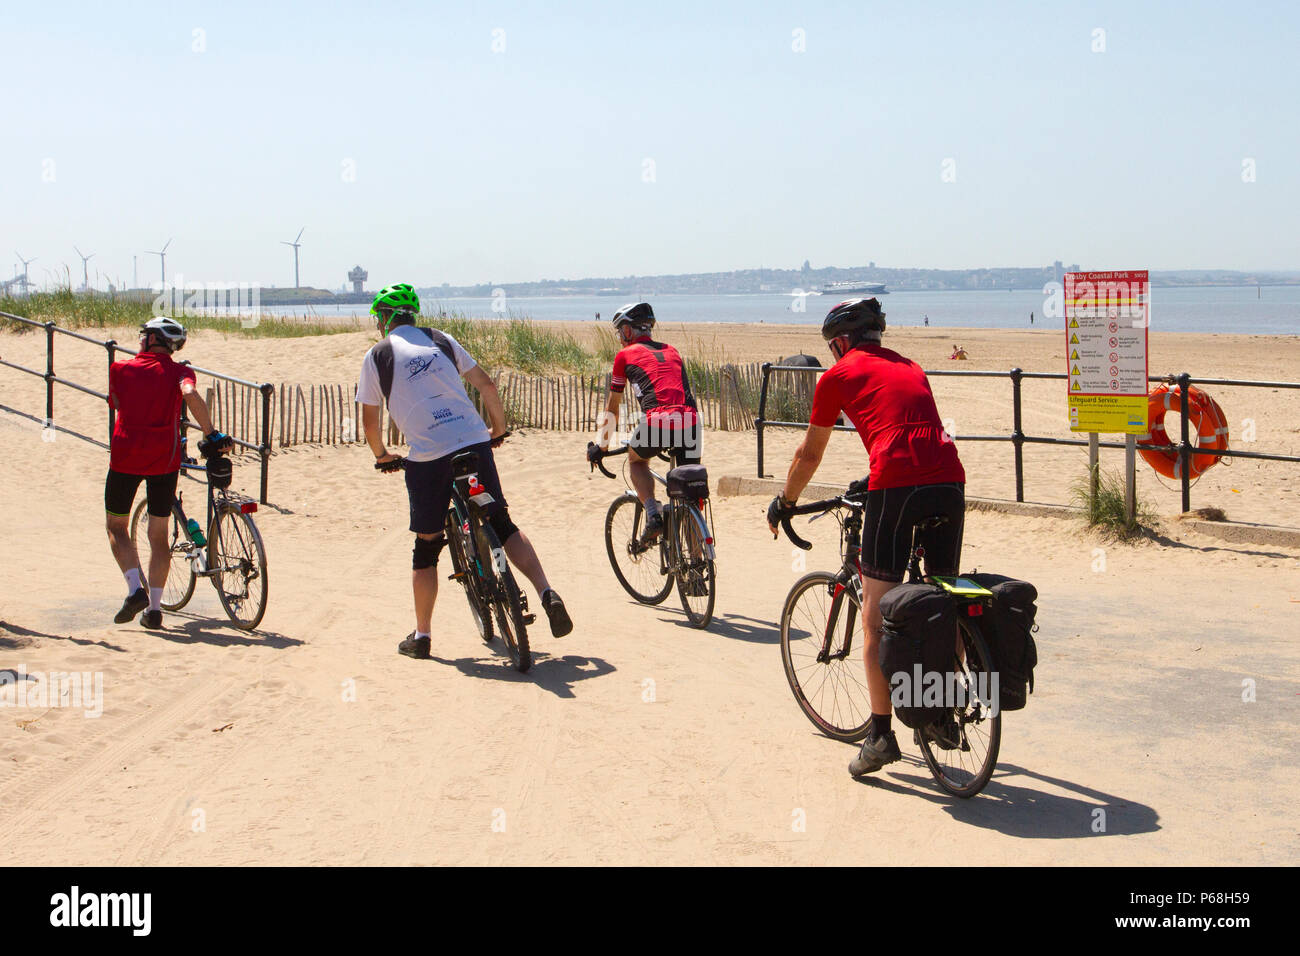 Quatre cyclistes sur la piste côtière de Crosby, Merseyside. 29 juin 2018. Météo au Royaume-Uni : des étés ensoleillés et lumineux sur la côte, les résidents et les vacanciers profitent du soleil sur la plage primée. Banque D'Images